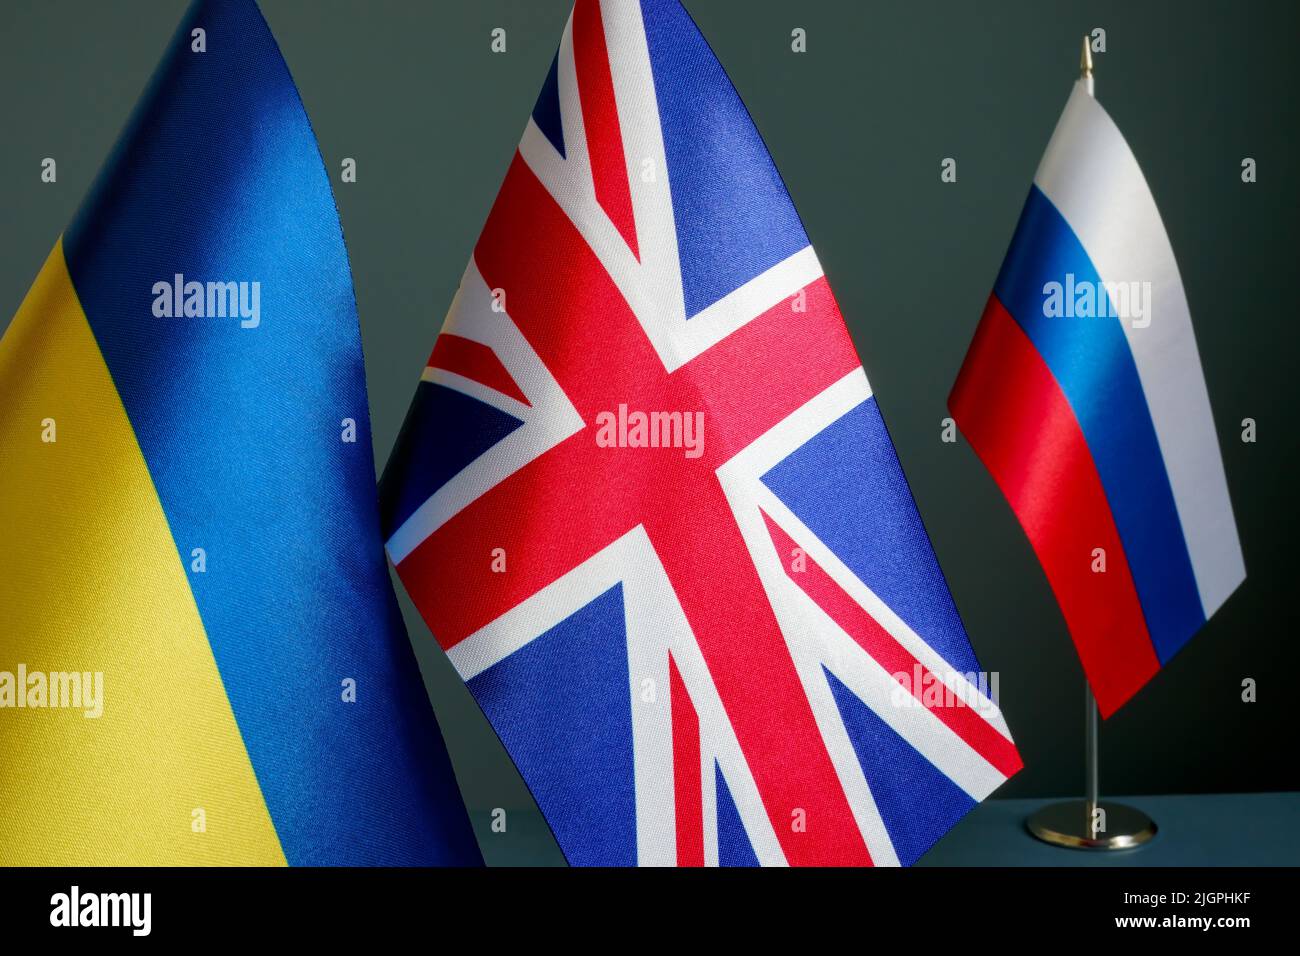 Die Flaggen der Ukraine und Großbritanniens sind weit von der Flagge Russlands entfernt. Stockfoto